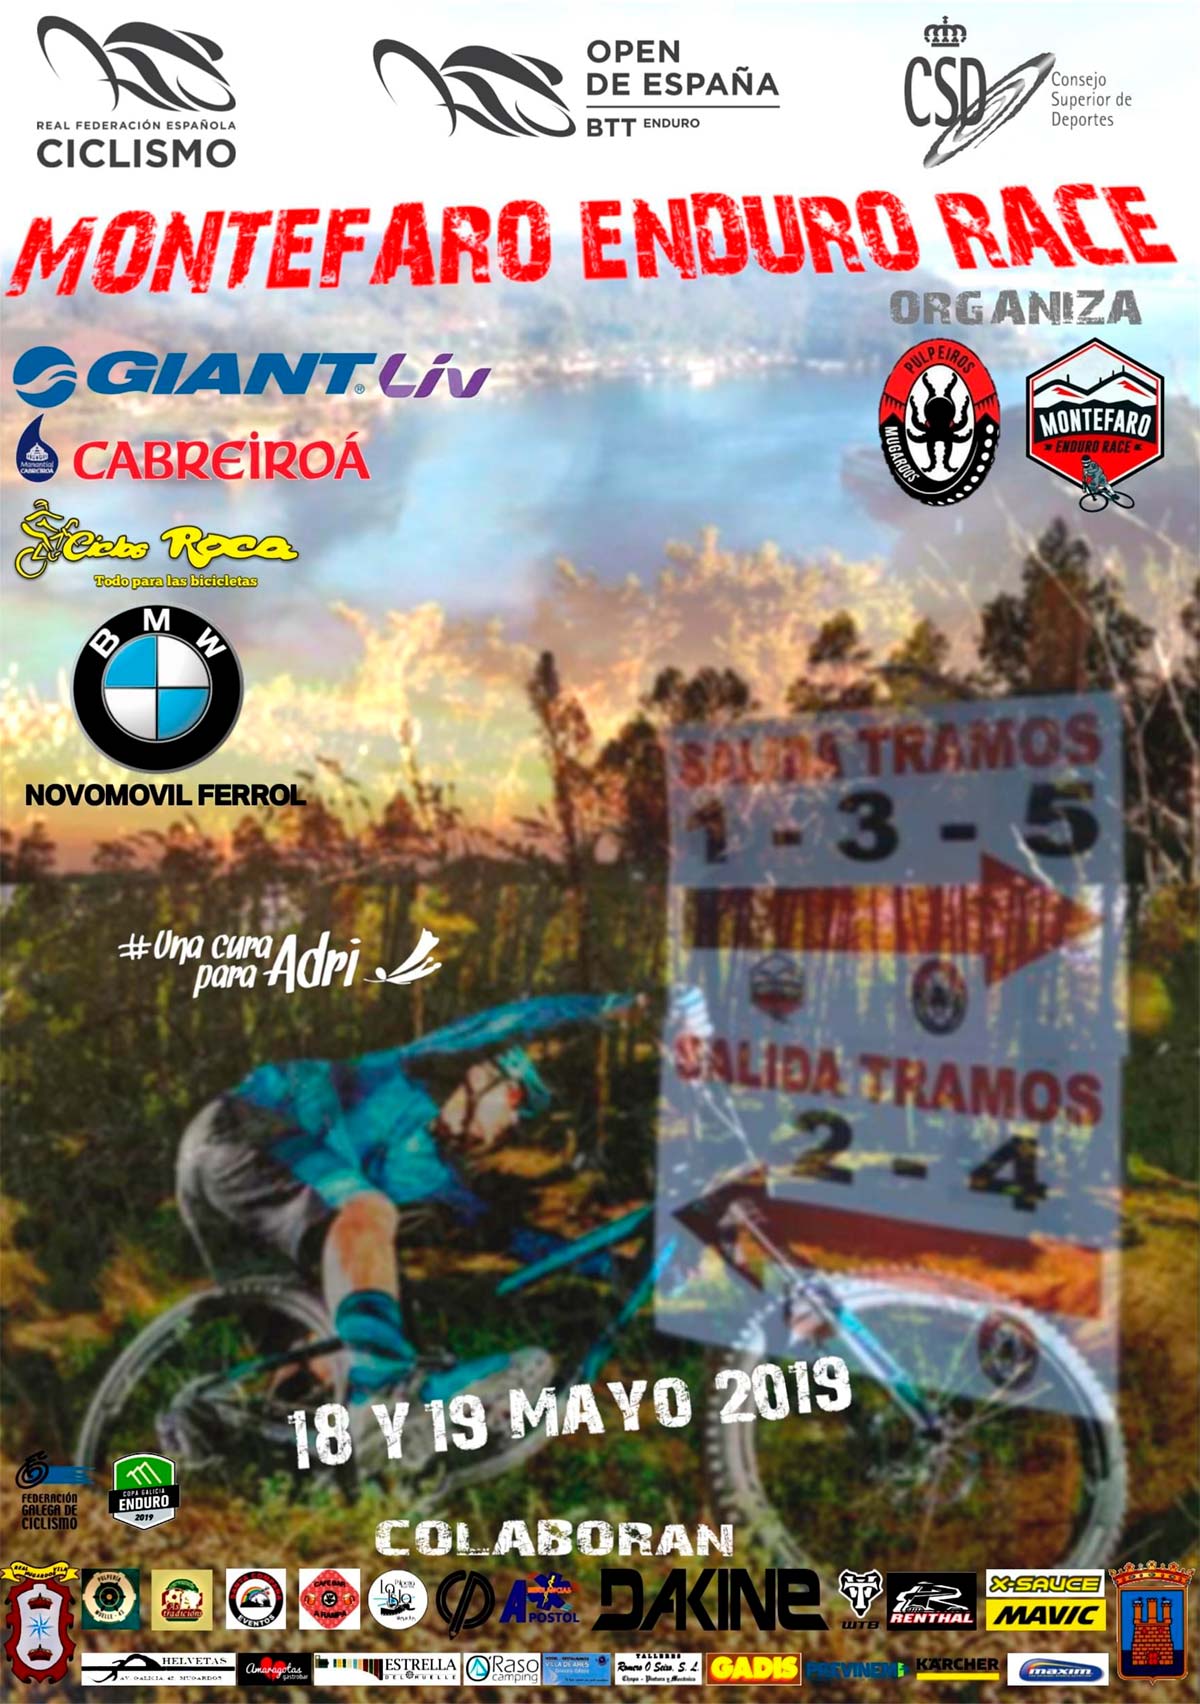 En TodoMountainBike: Todo a punto para la Montefaro Enduro Race, tercera prueba del Open de España de Enduro 2019